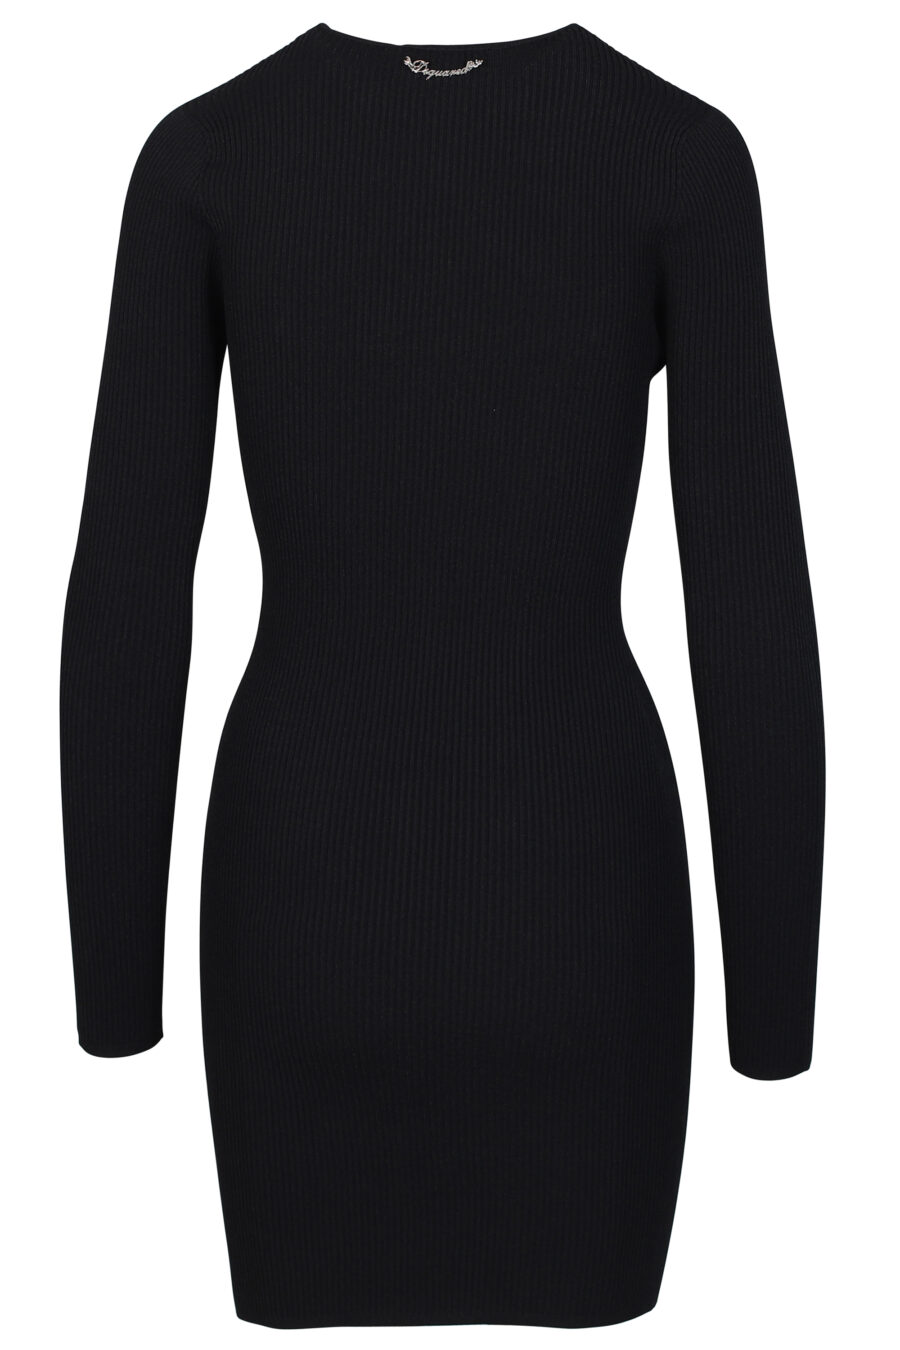 Kurzes schwarzes "Cut-Out" Kleid mit langen Ärmeln und Ausschnitt - 8054148010836 3